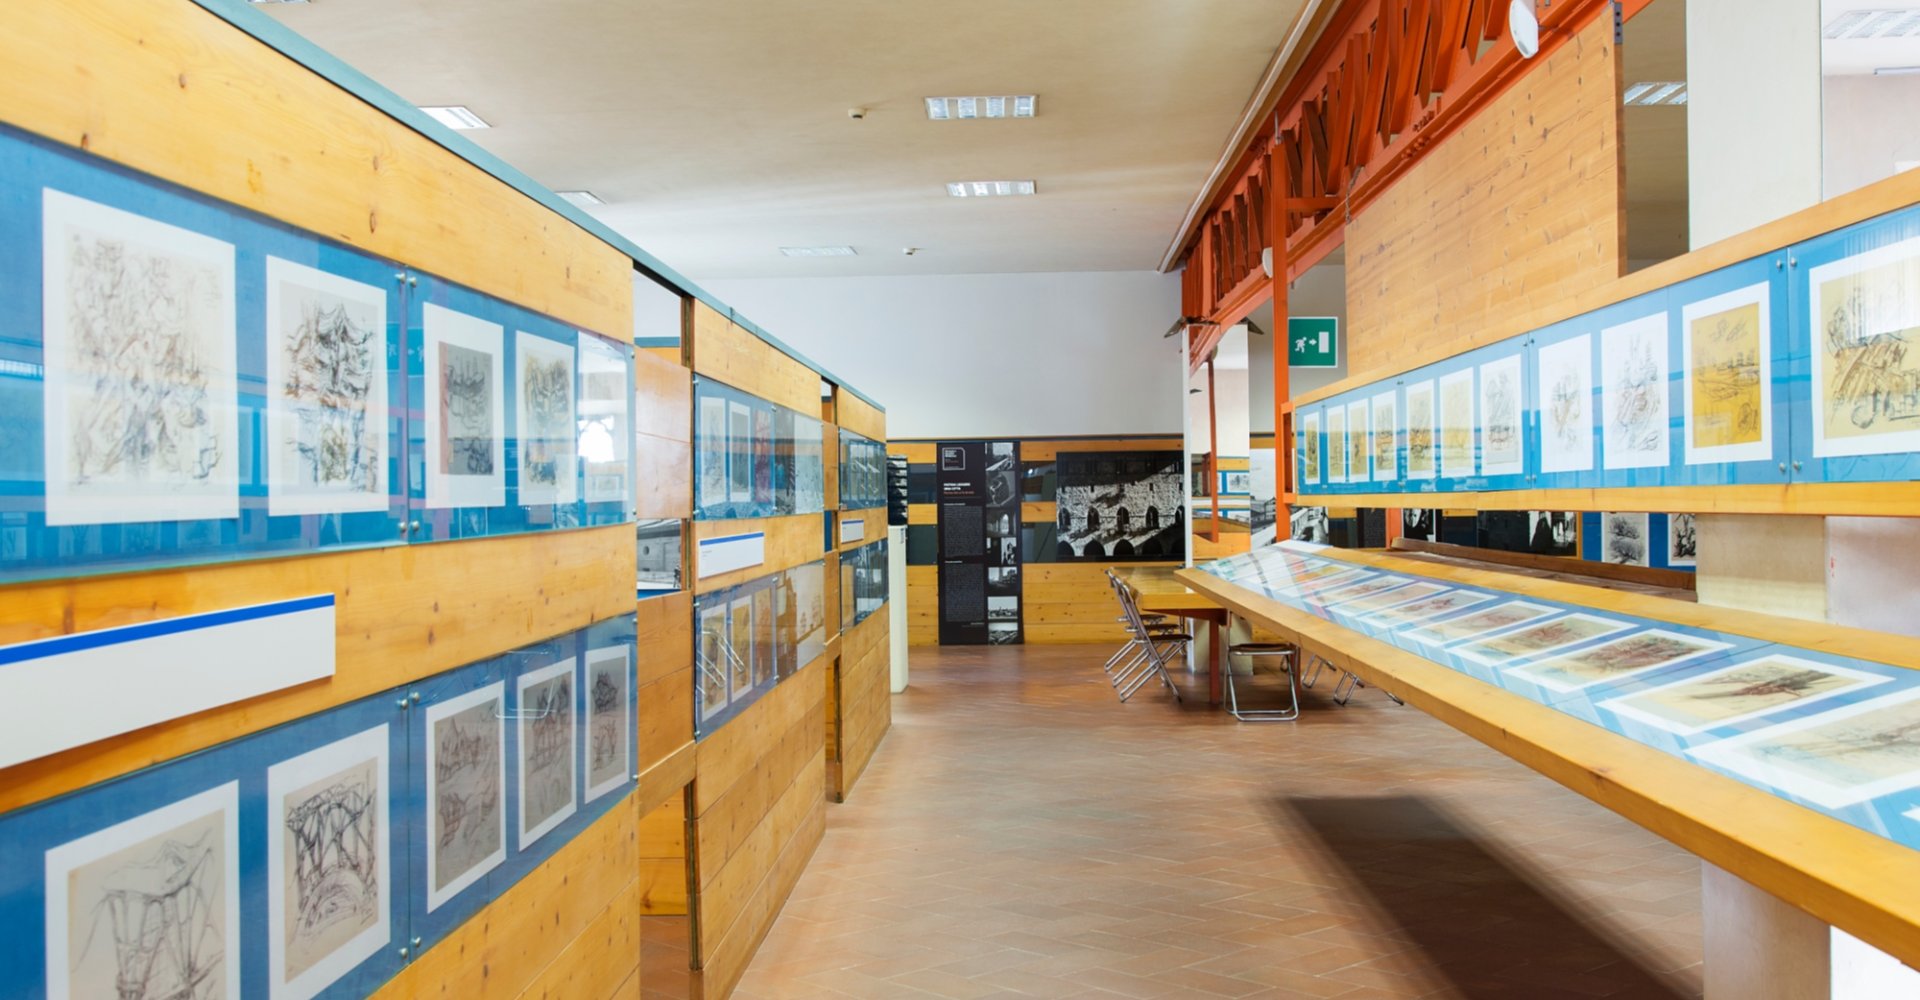 Centro di Documentazione Giovanni Michelucci in Pistoia